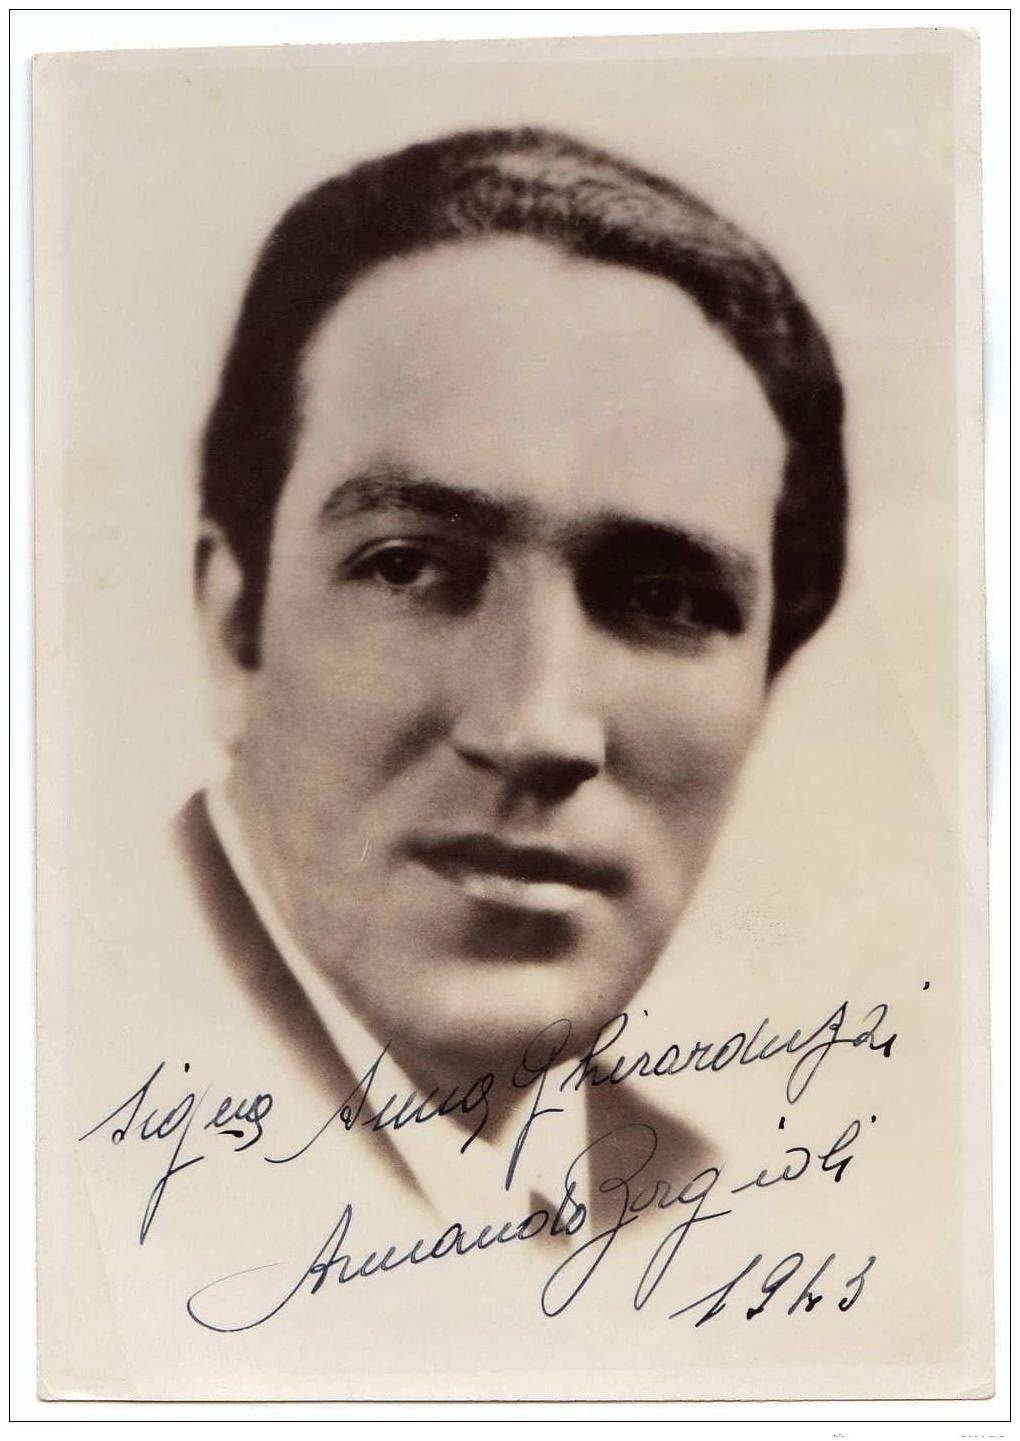 Armando Borgioli (1898-03-19 – 1945-01-20). Operatic baritones